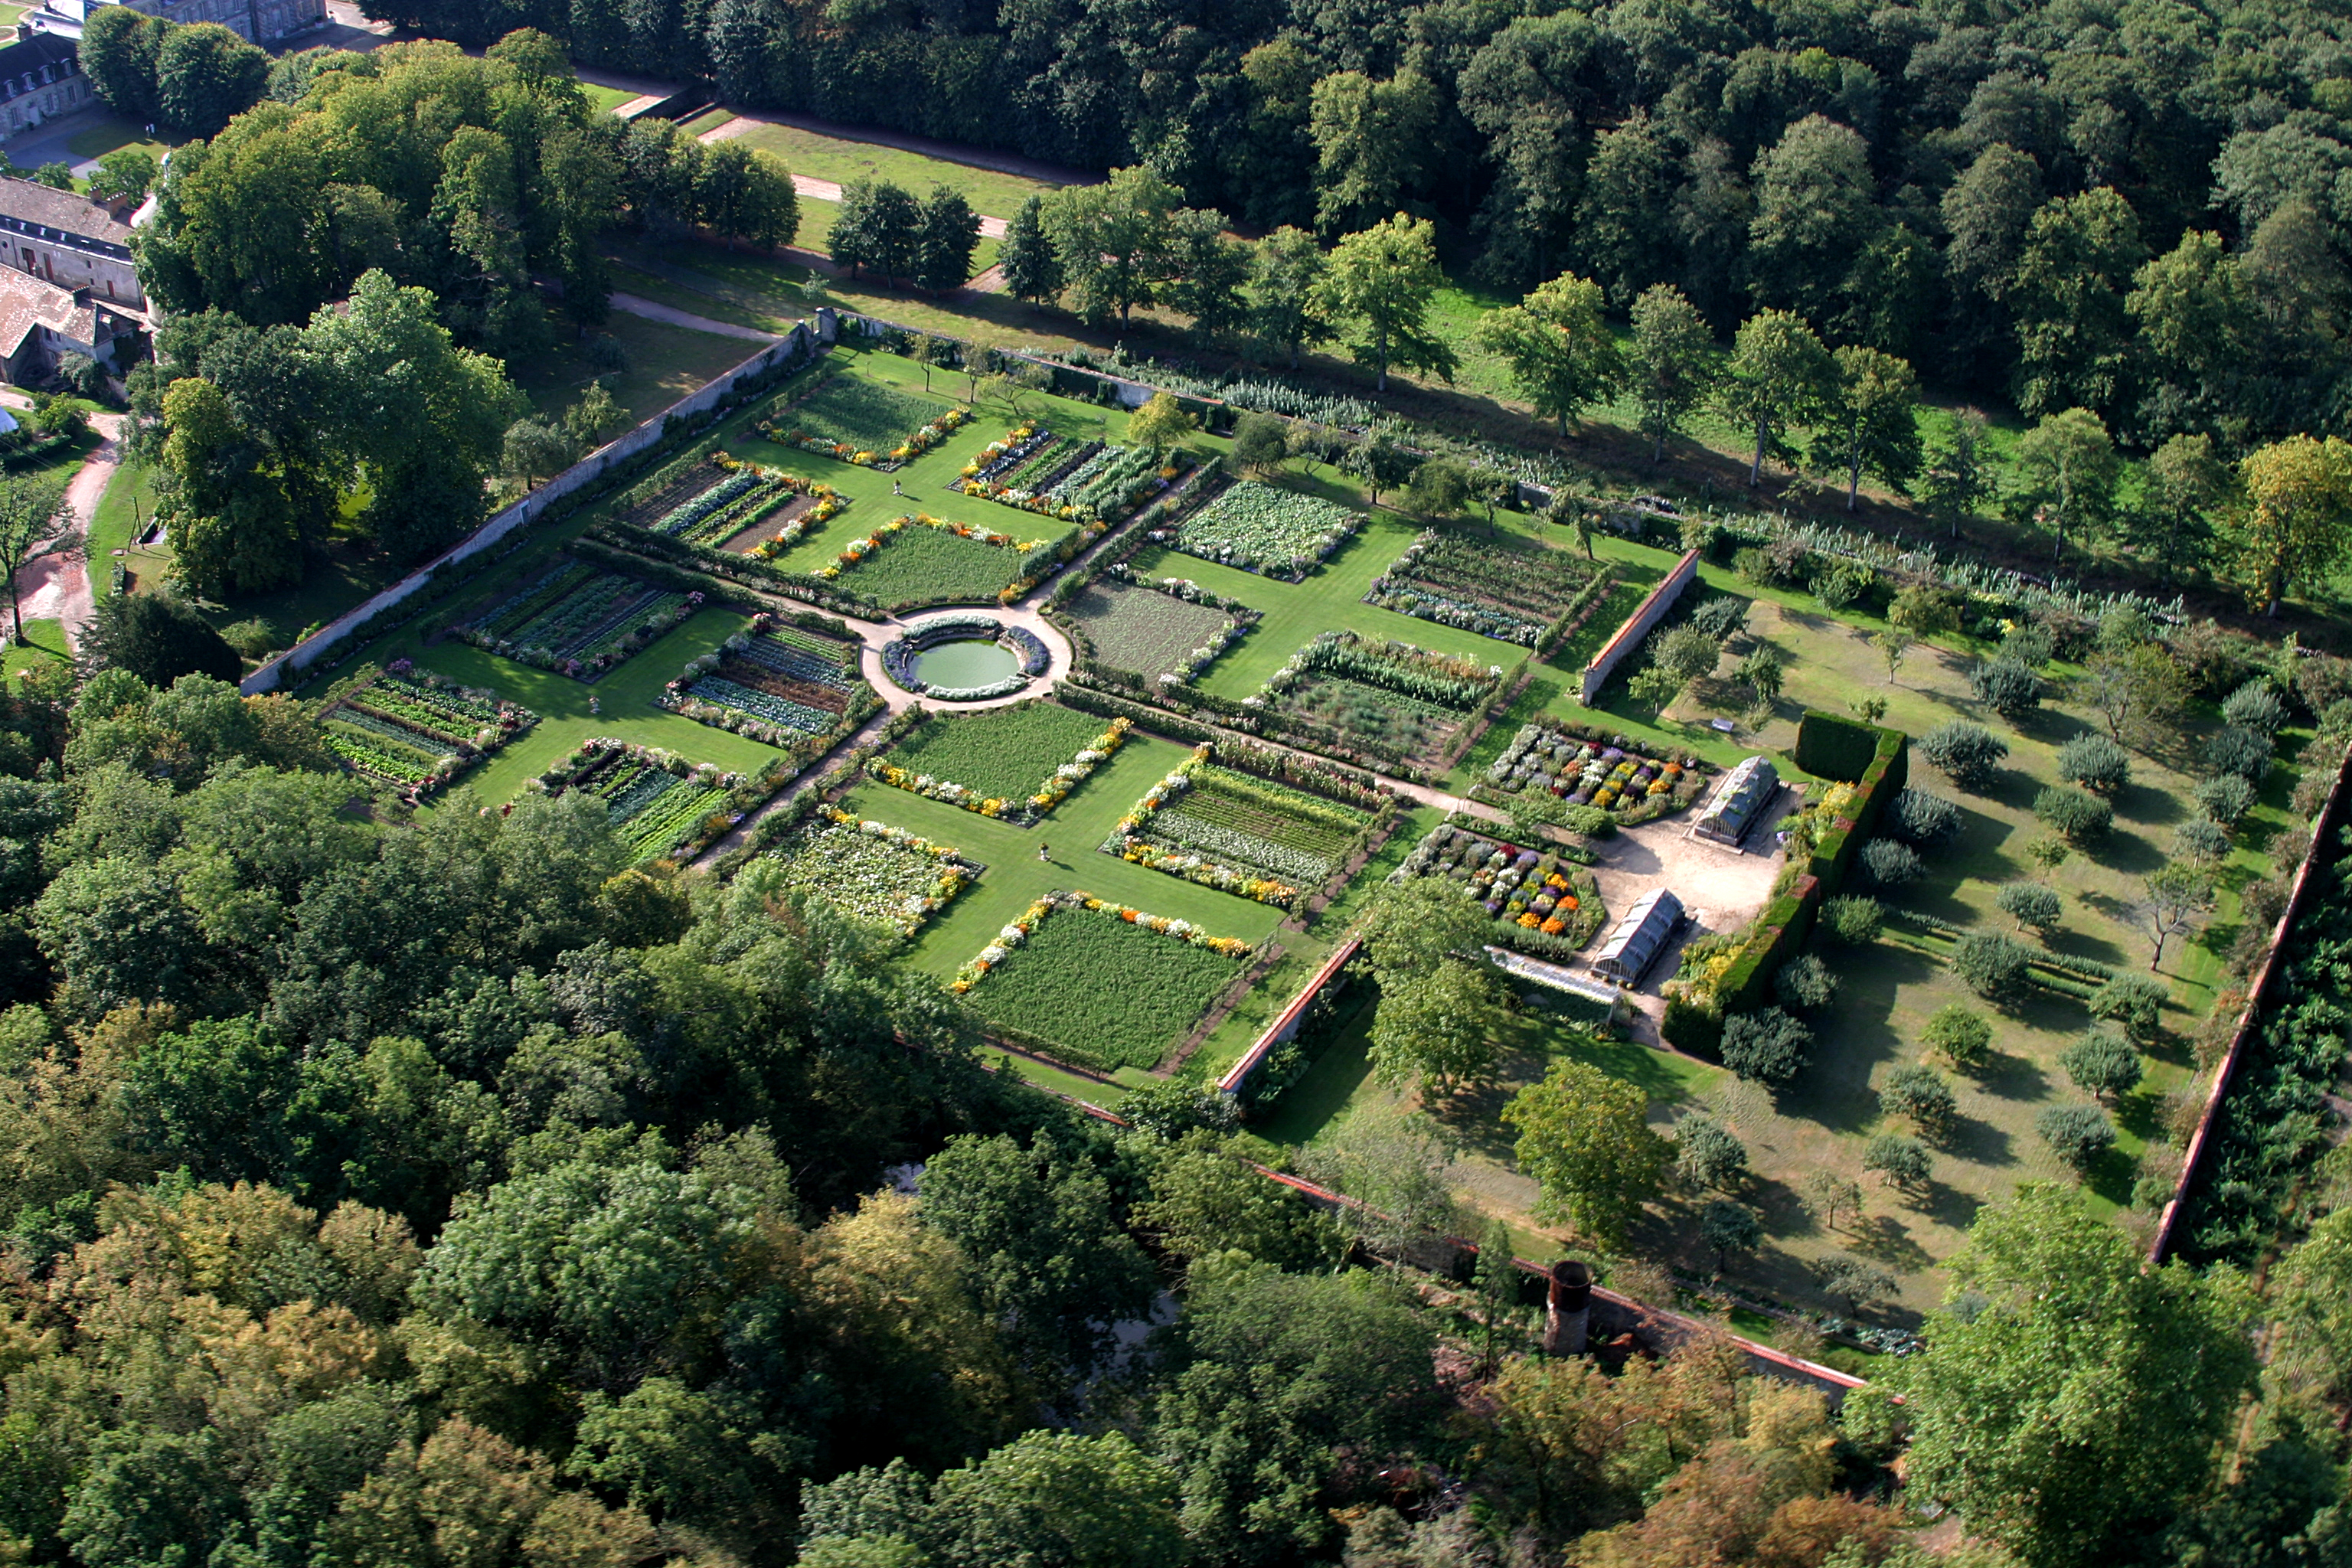 Le potager de deux hectares du domaine de Saint-Jean de Beauregard, en Essonne, est classé « Jardin remarquable ». Copyright (c) Château de Saint-Jean de Beauregard.